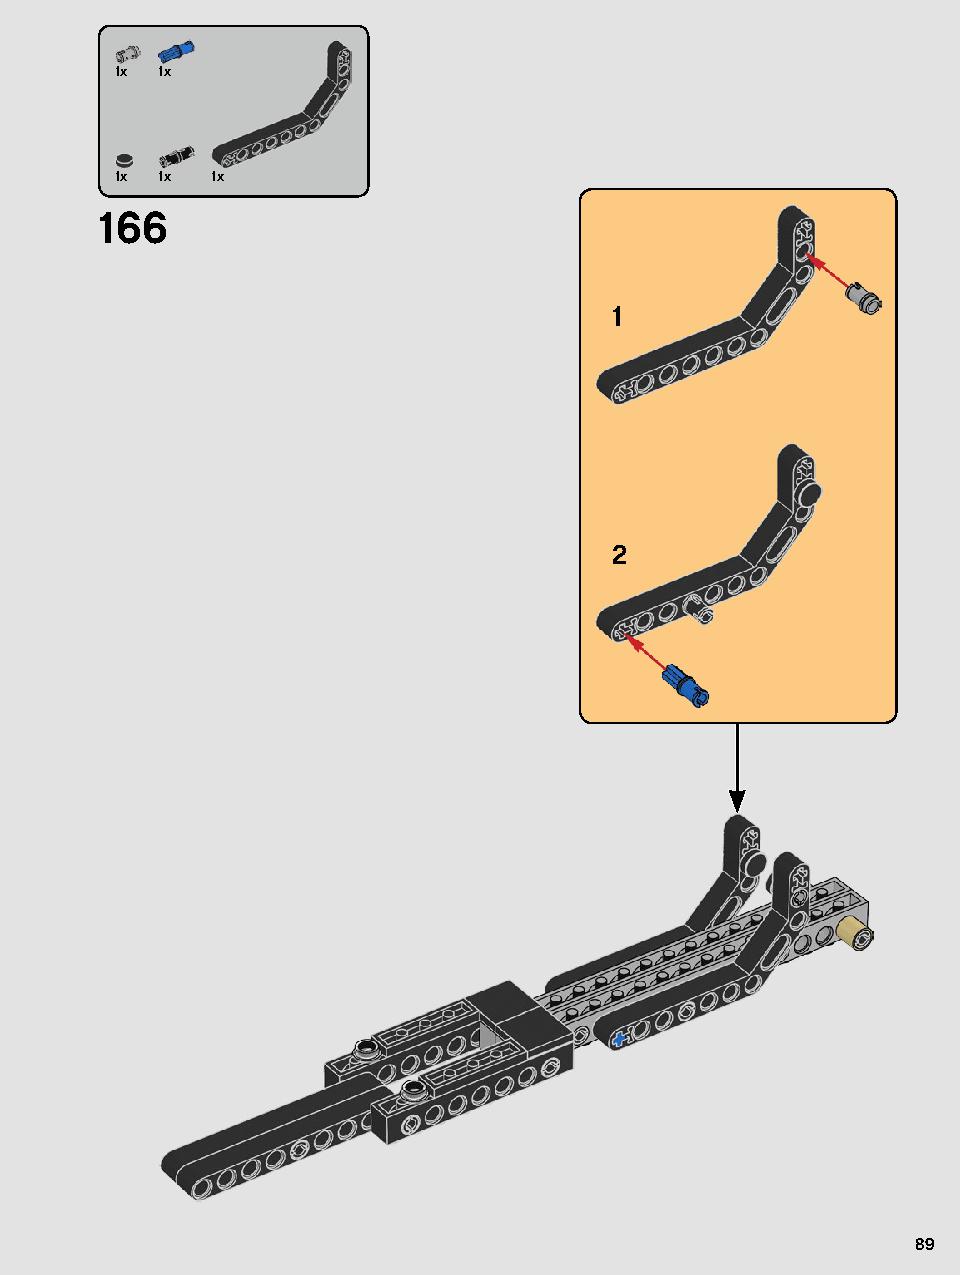 스타워즈 카일로 렌의 셔틀™ 75256 레고 세트 제품정보 레고 조립설명서 89 page